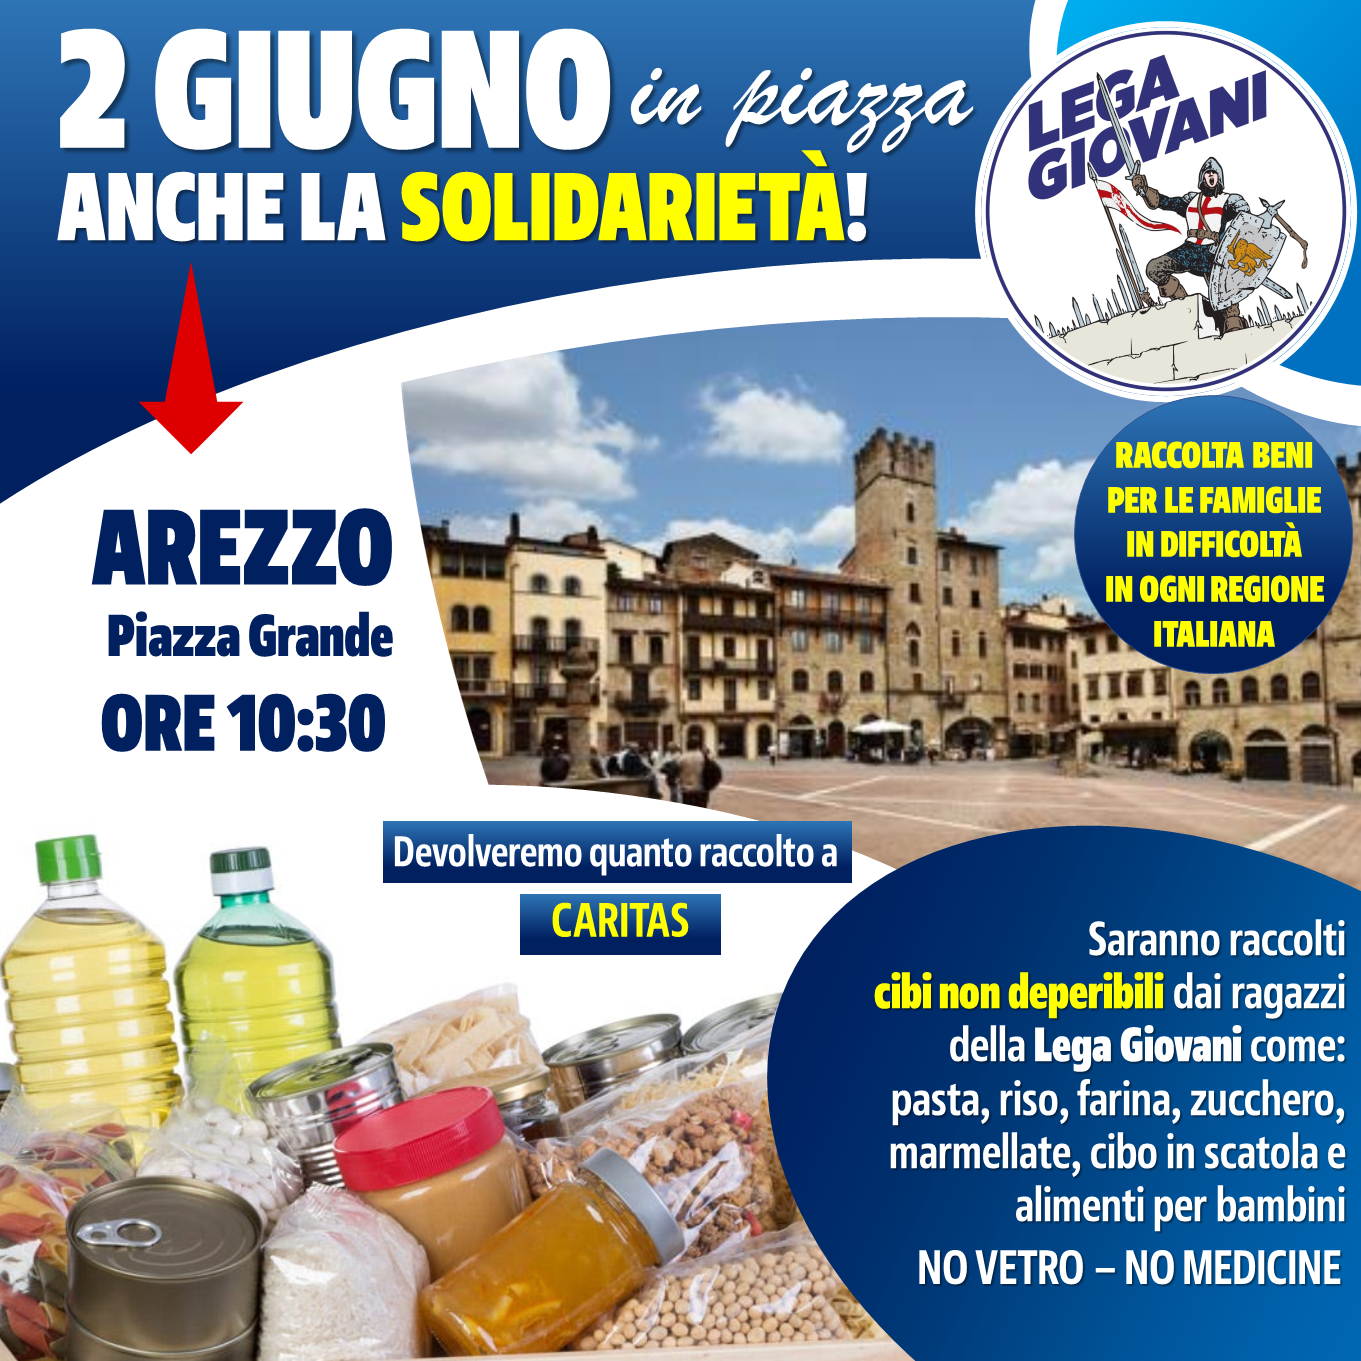 Rivi: “Il 2 Giugno in Piazza Grande anche la Solidarietà: raccolta alimentari della Lega Giovani per le famiglie in difficoltà”